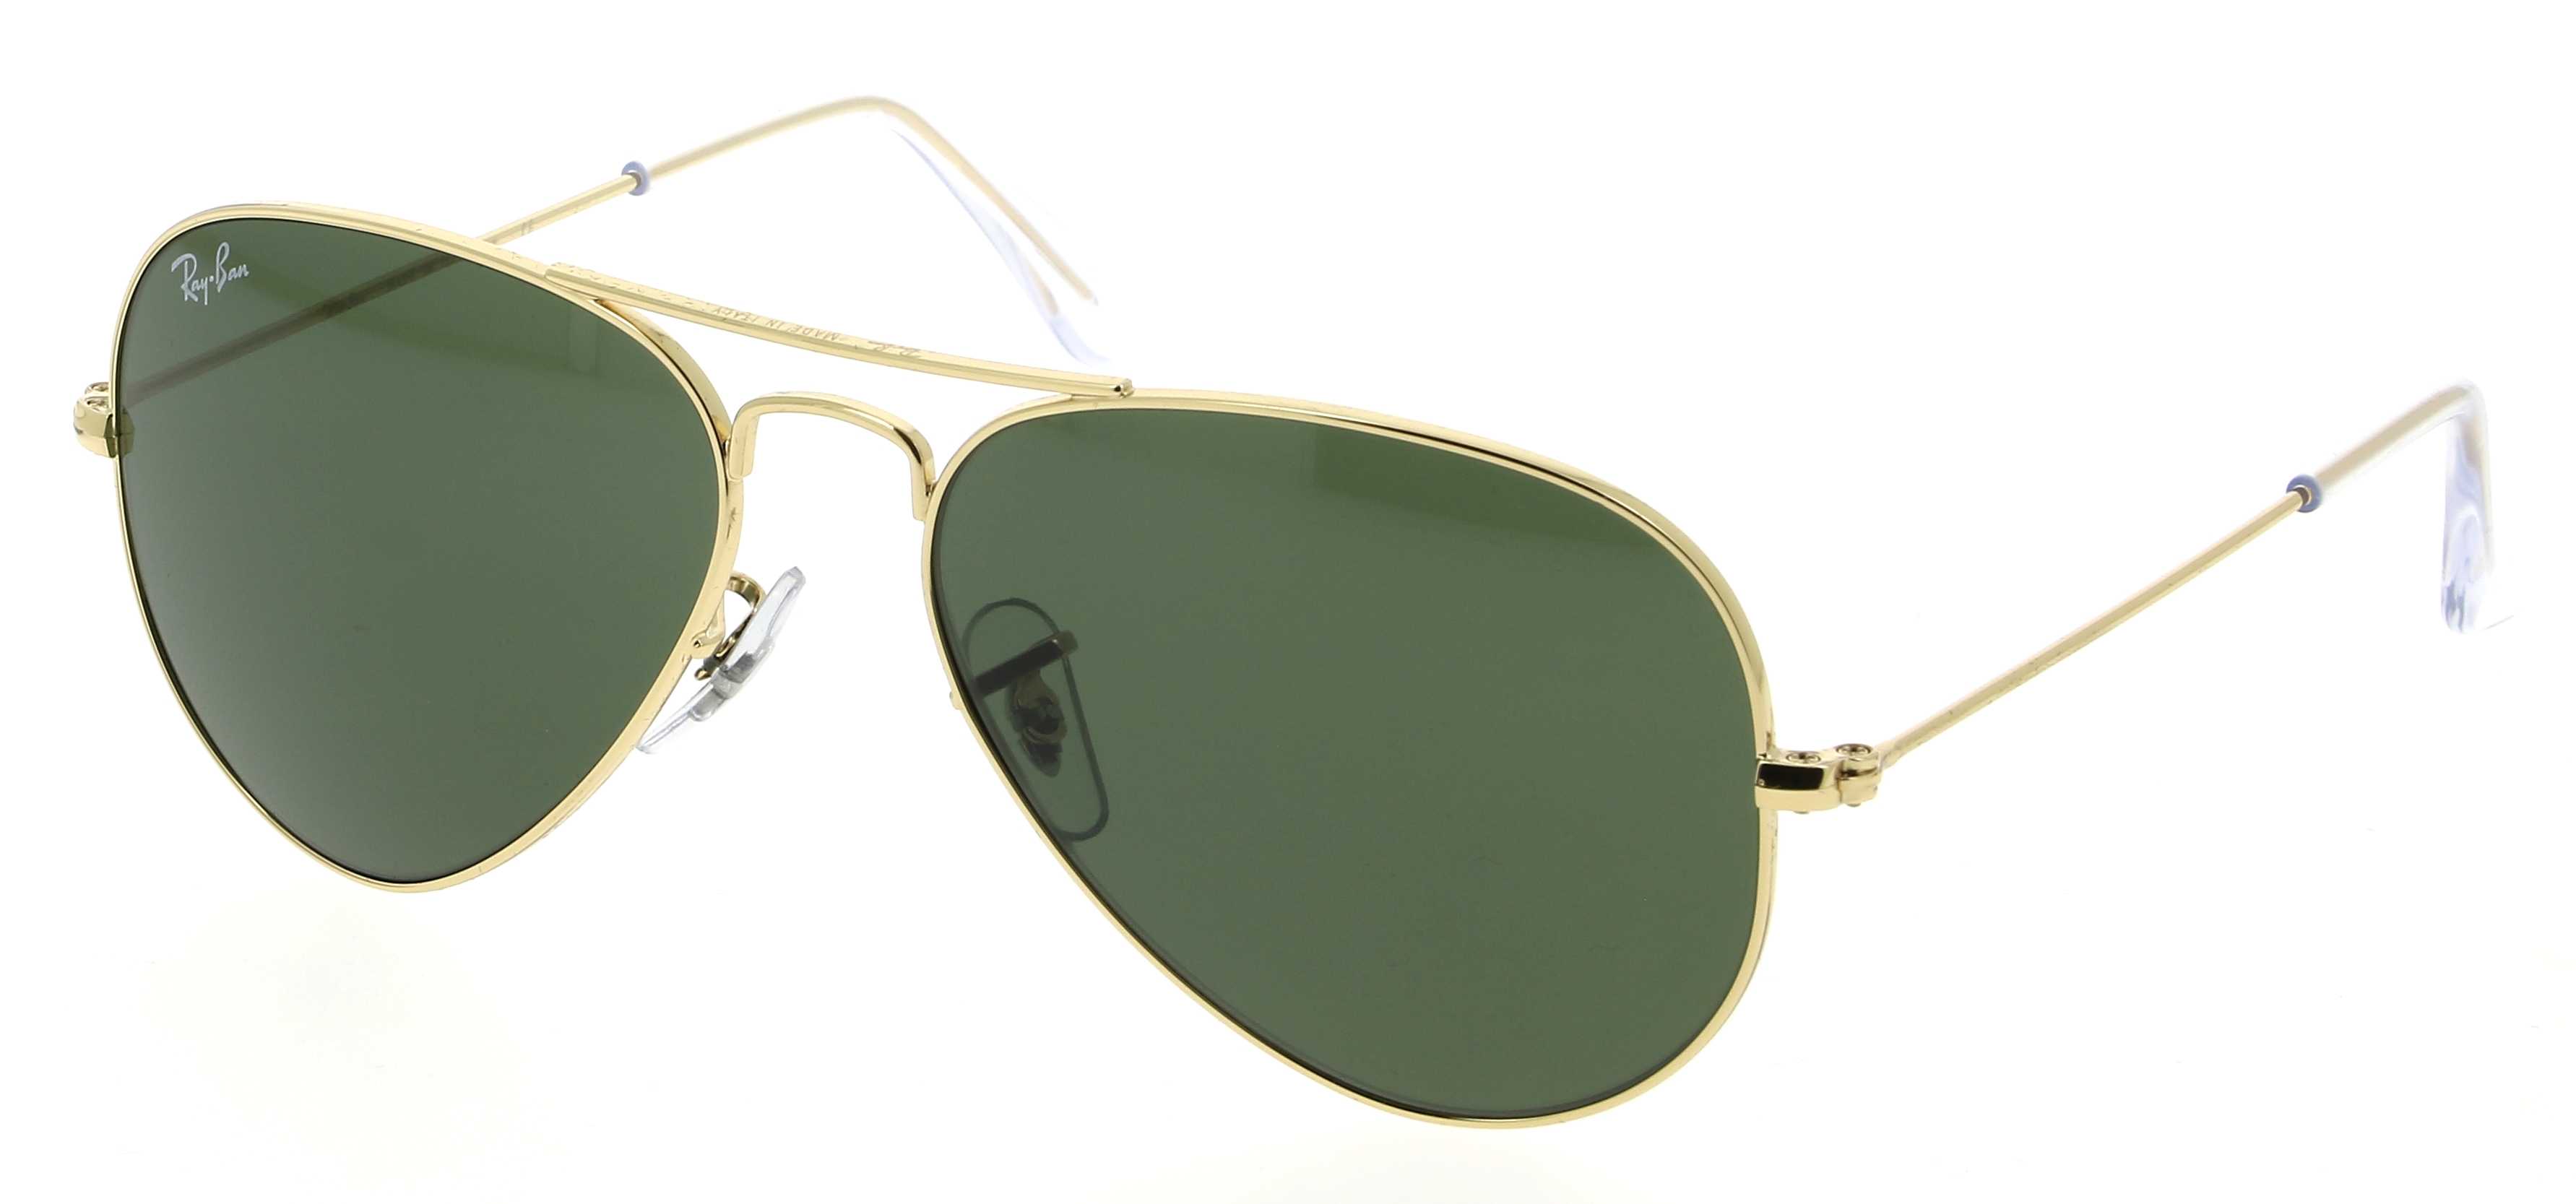 Sunglasses RAY-BAN RB 3025 W3234 Aviator 55/14 Unisex doré Aviator frames  Full Frame Glasses Vintage 55mmx14mm 125$CA